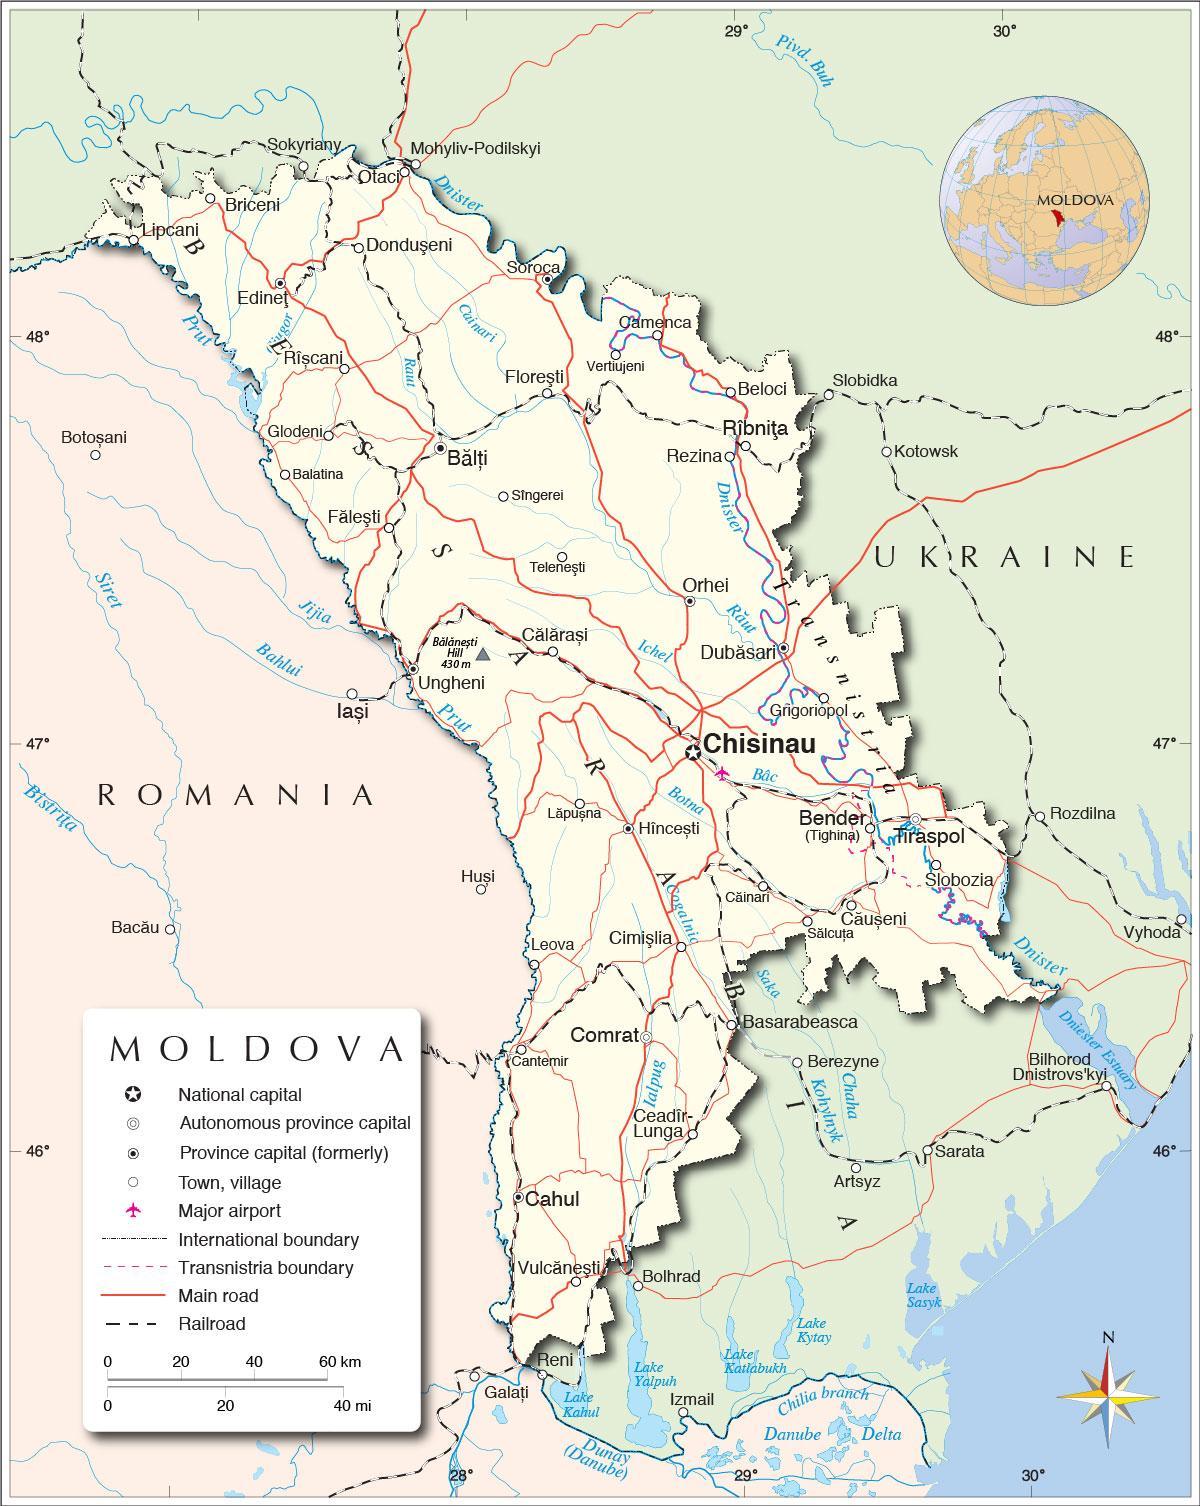 מפה של הרפובליקה של מולדובה